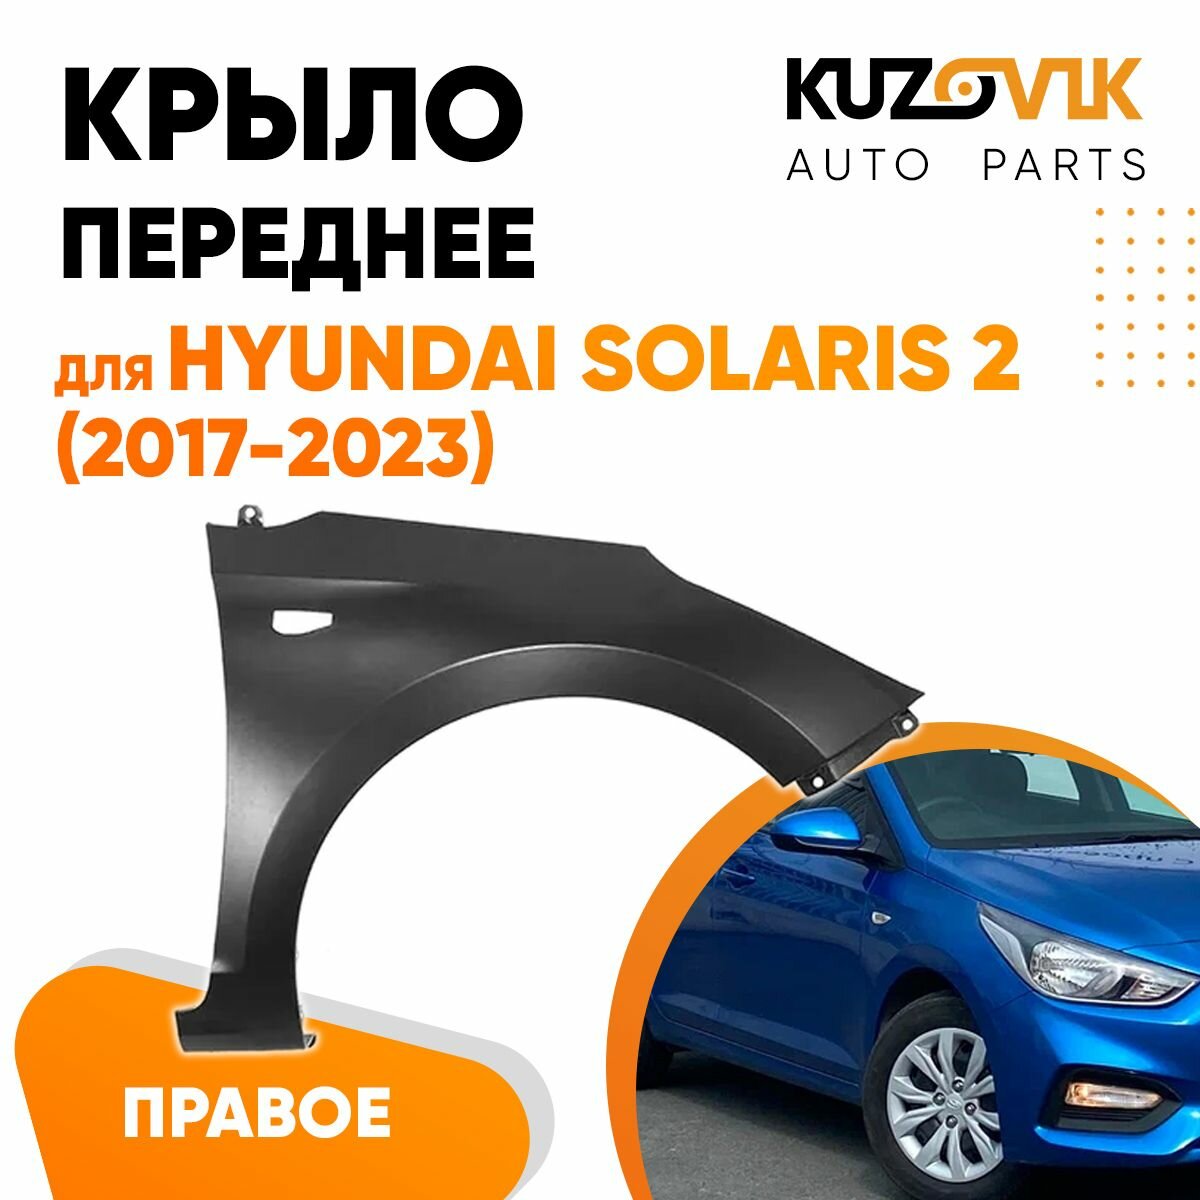 Крыло переднее правое Hyundai Solaris 2 (2017-2020)